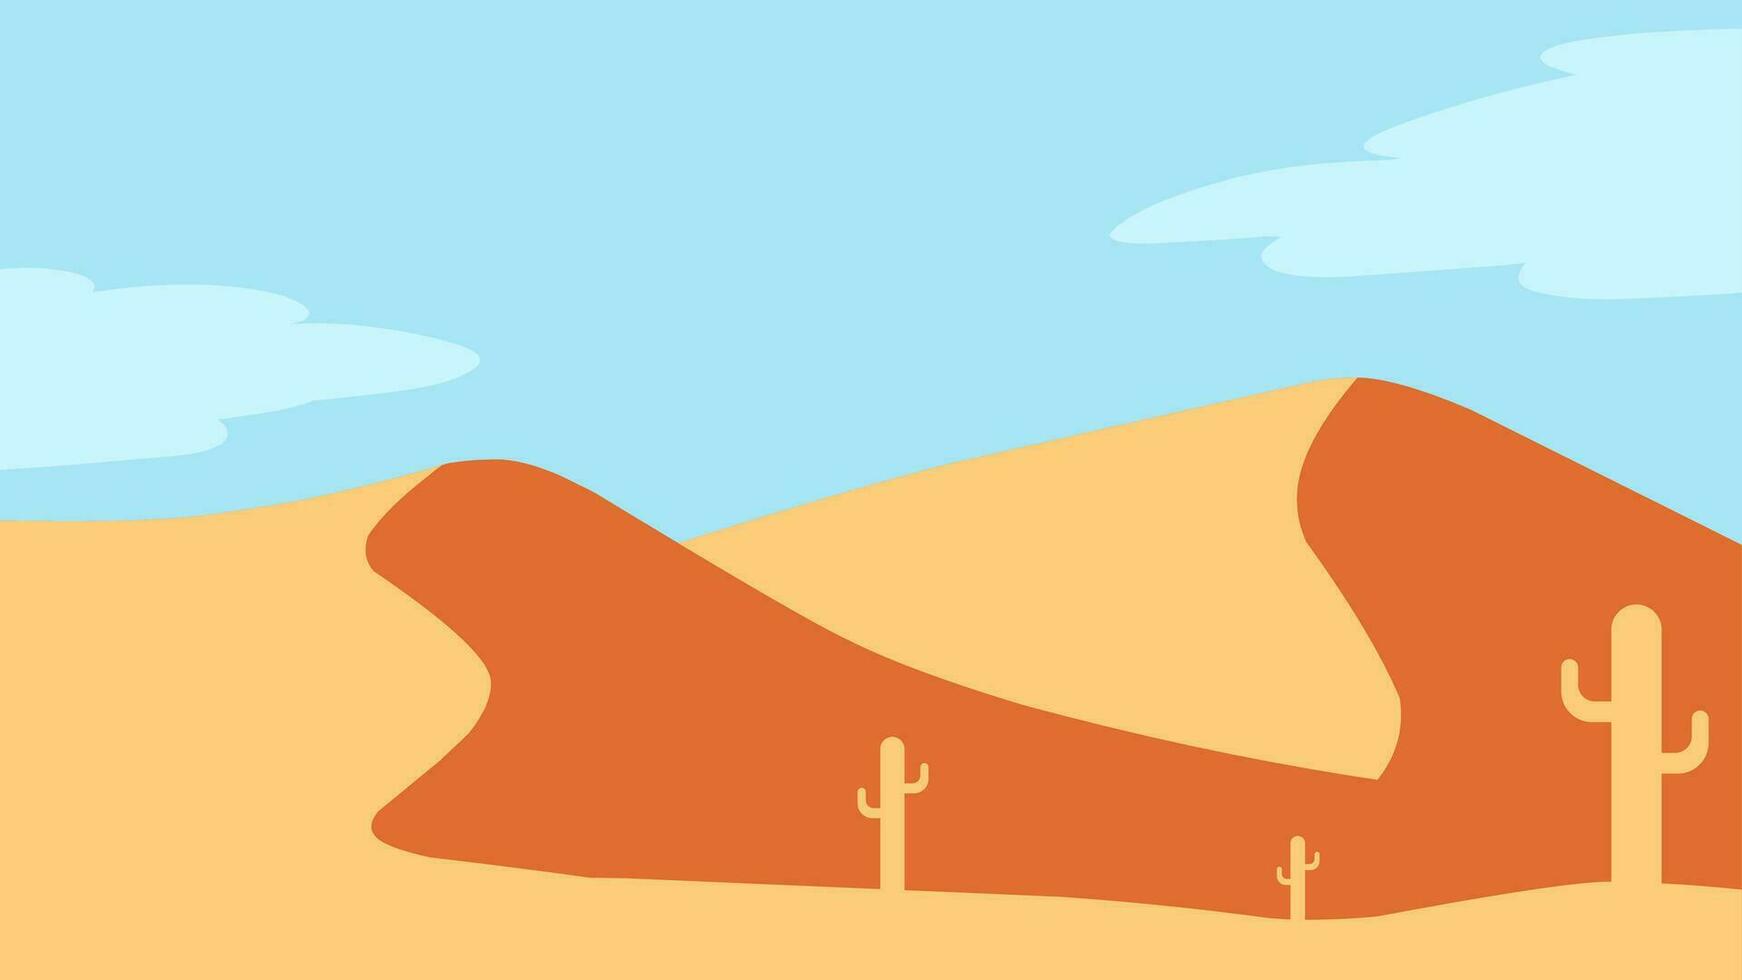 woestijn landschap vector illustratie. landschap van zand woestijn met warmte zon en cactus. droog woestijn landschap voor illustratie, achtergrond of behang